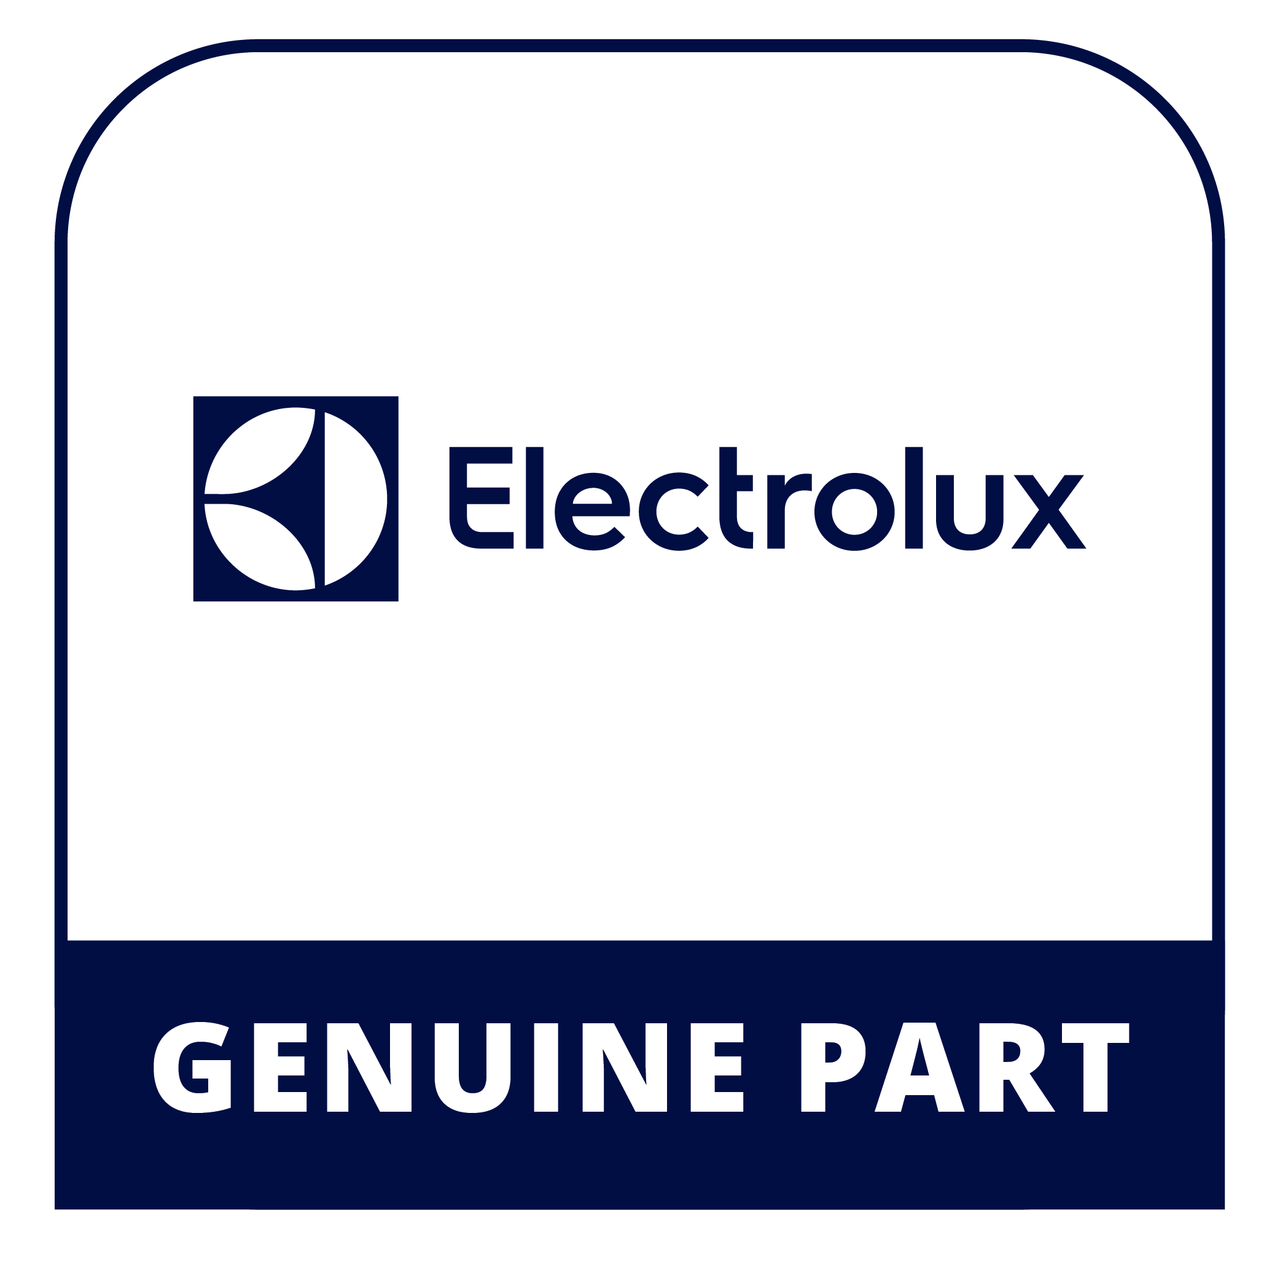 Frigidaire - Electrolux 134398300 - Switch - Genuine Electrolux Part